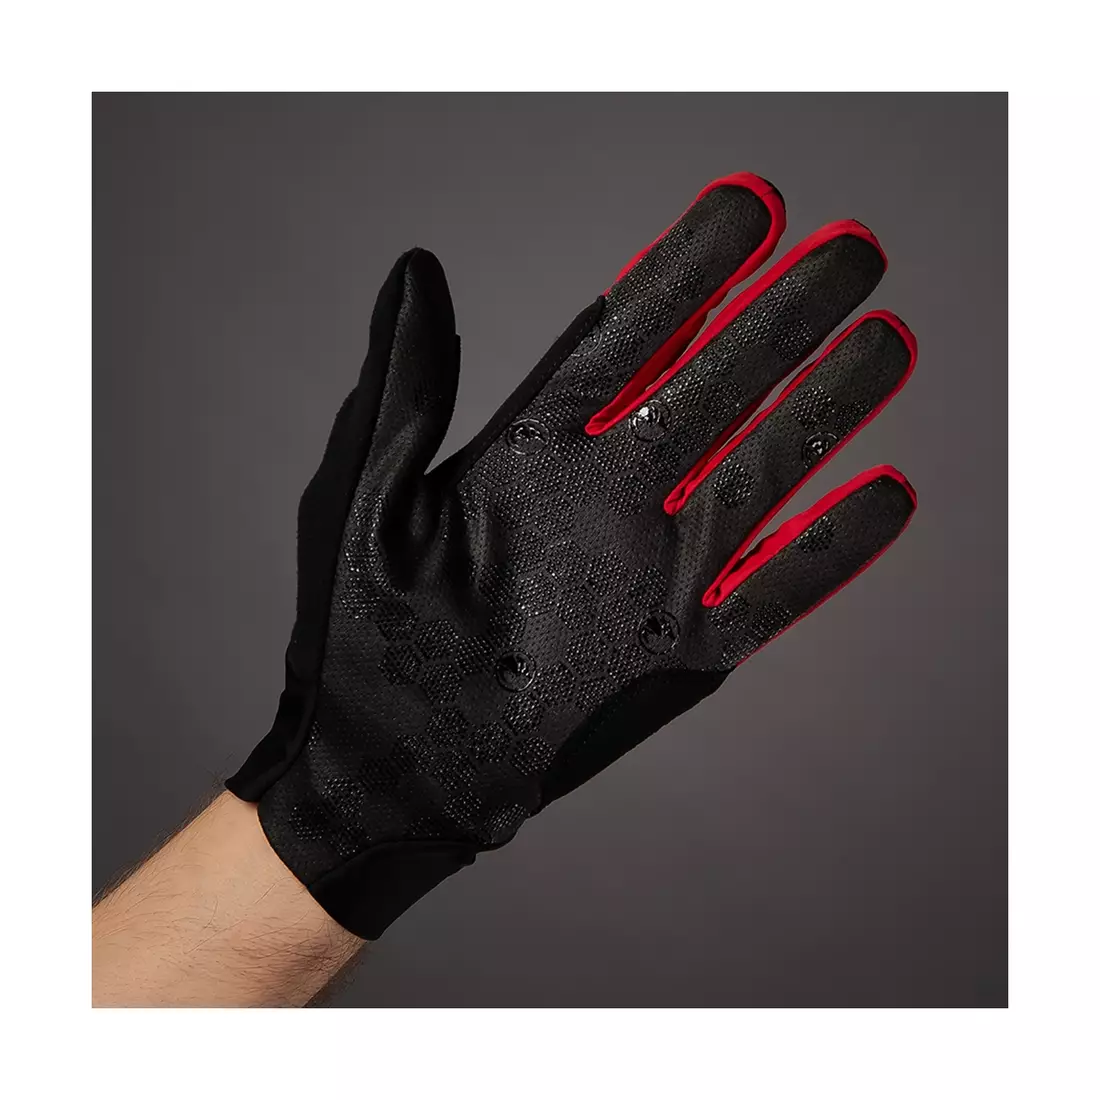 CHIBA SUPERLIGHT mănuși de ciclism negru și roșu